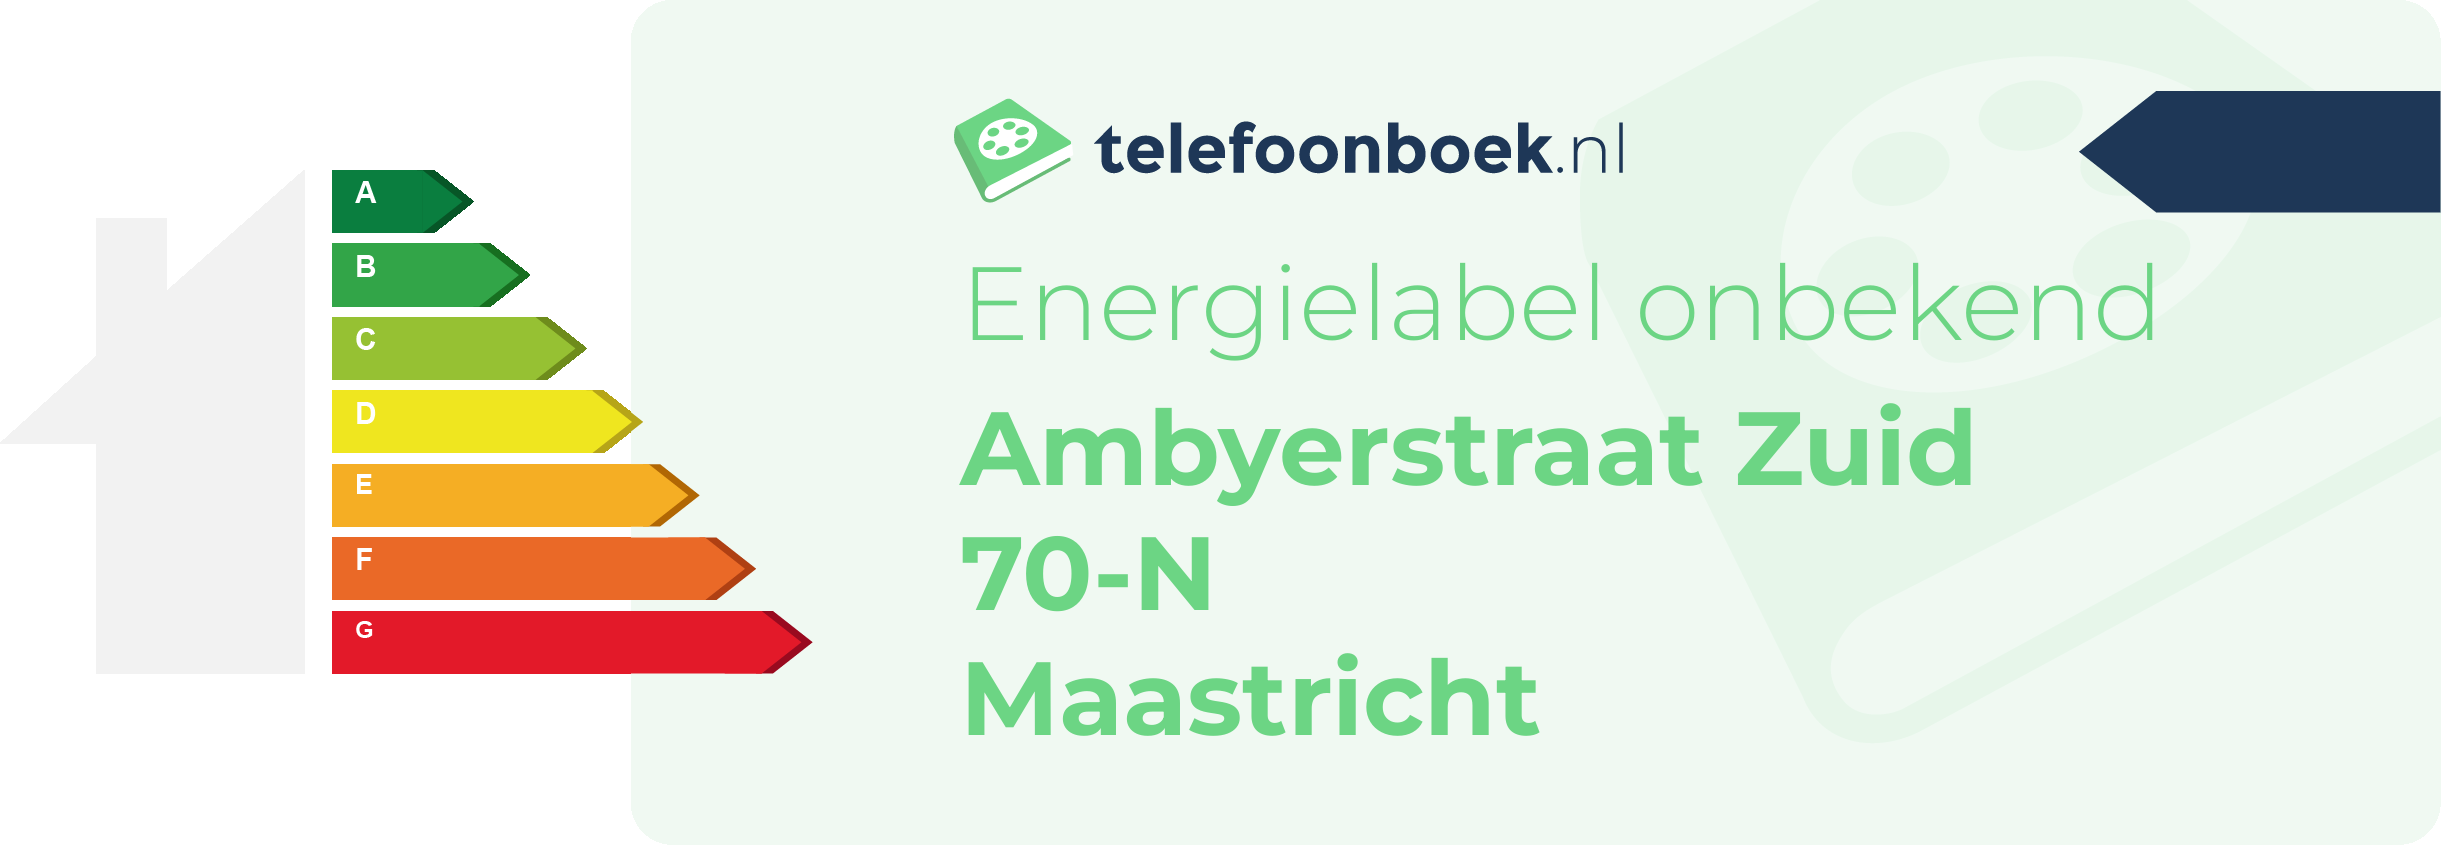 Energielabel Ambyerstraat Zuid 70-N Maastricht